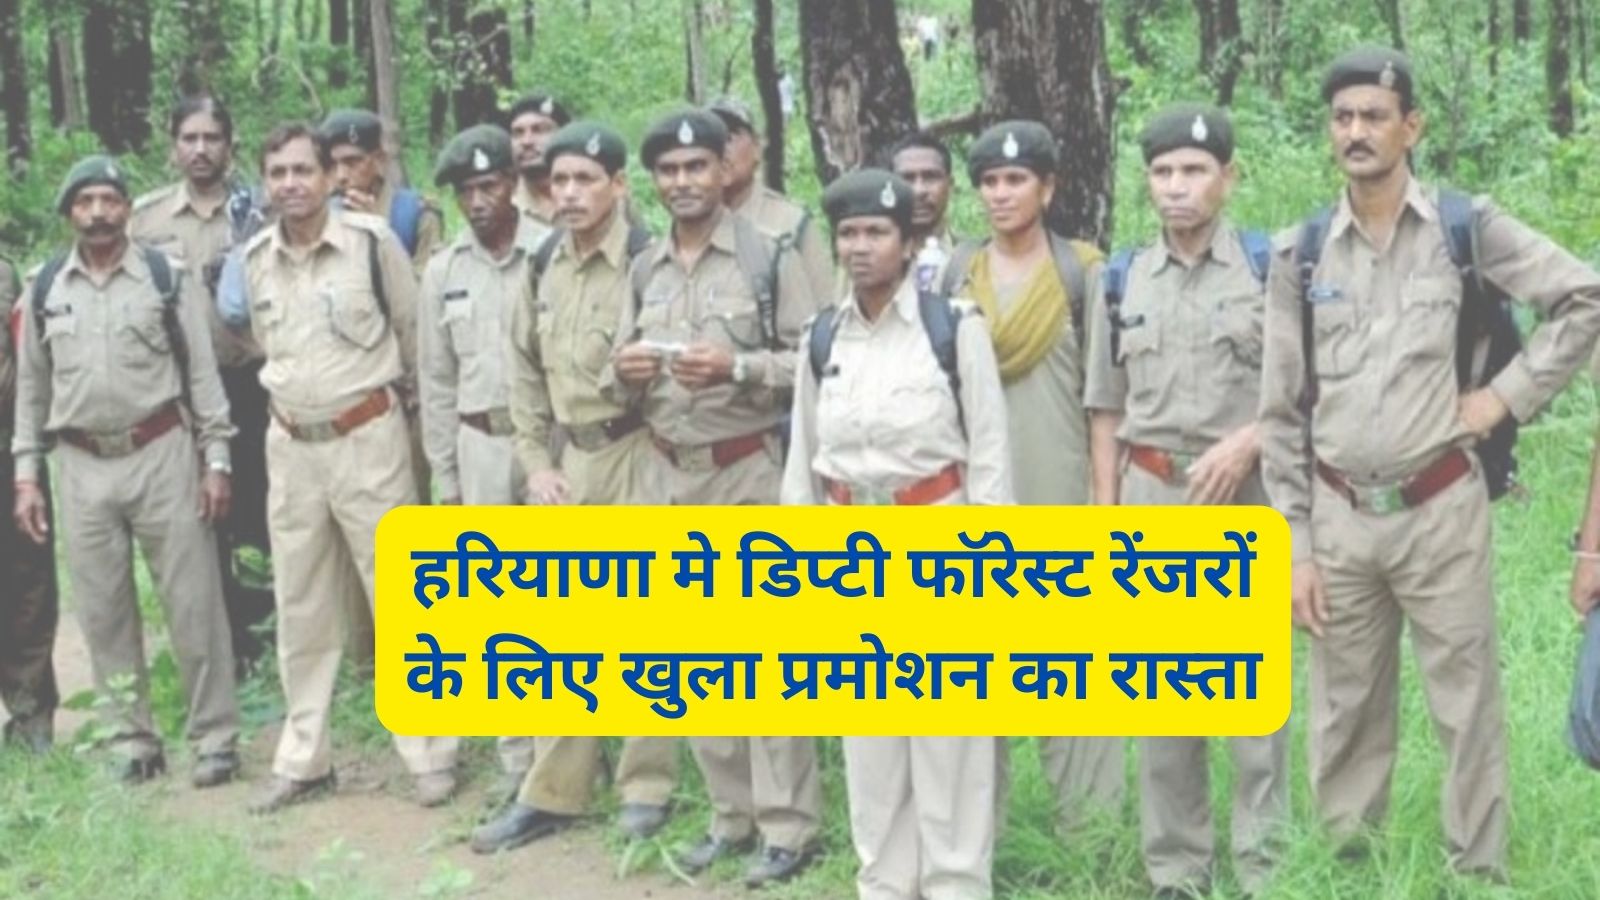 Deputy Forest Ranger Haryana:हरियाणा मे डिप्टी फॉरेस्ट रेंजरों के लिए खुला प्रमोशन का रास्ता,वन विभाग ने बदले प्रमोशन के नियम